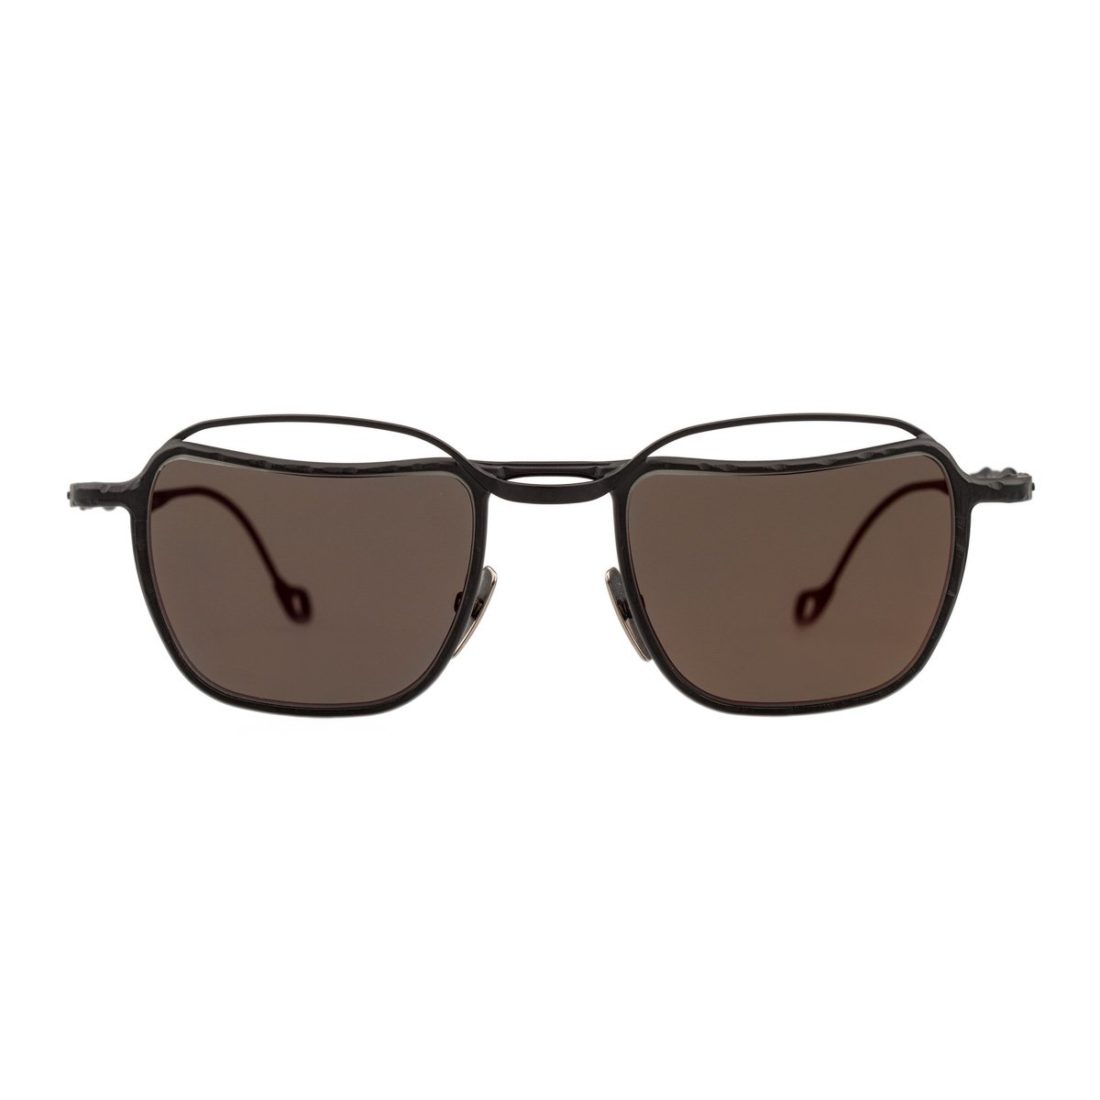 Gafas de sol negras | Comprar gafas online